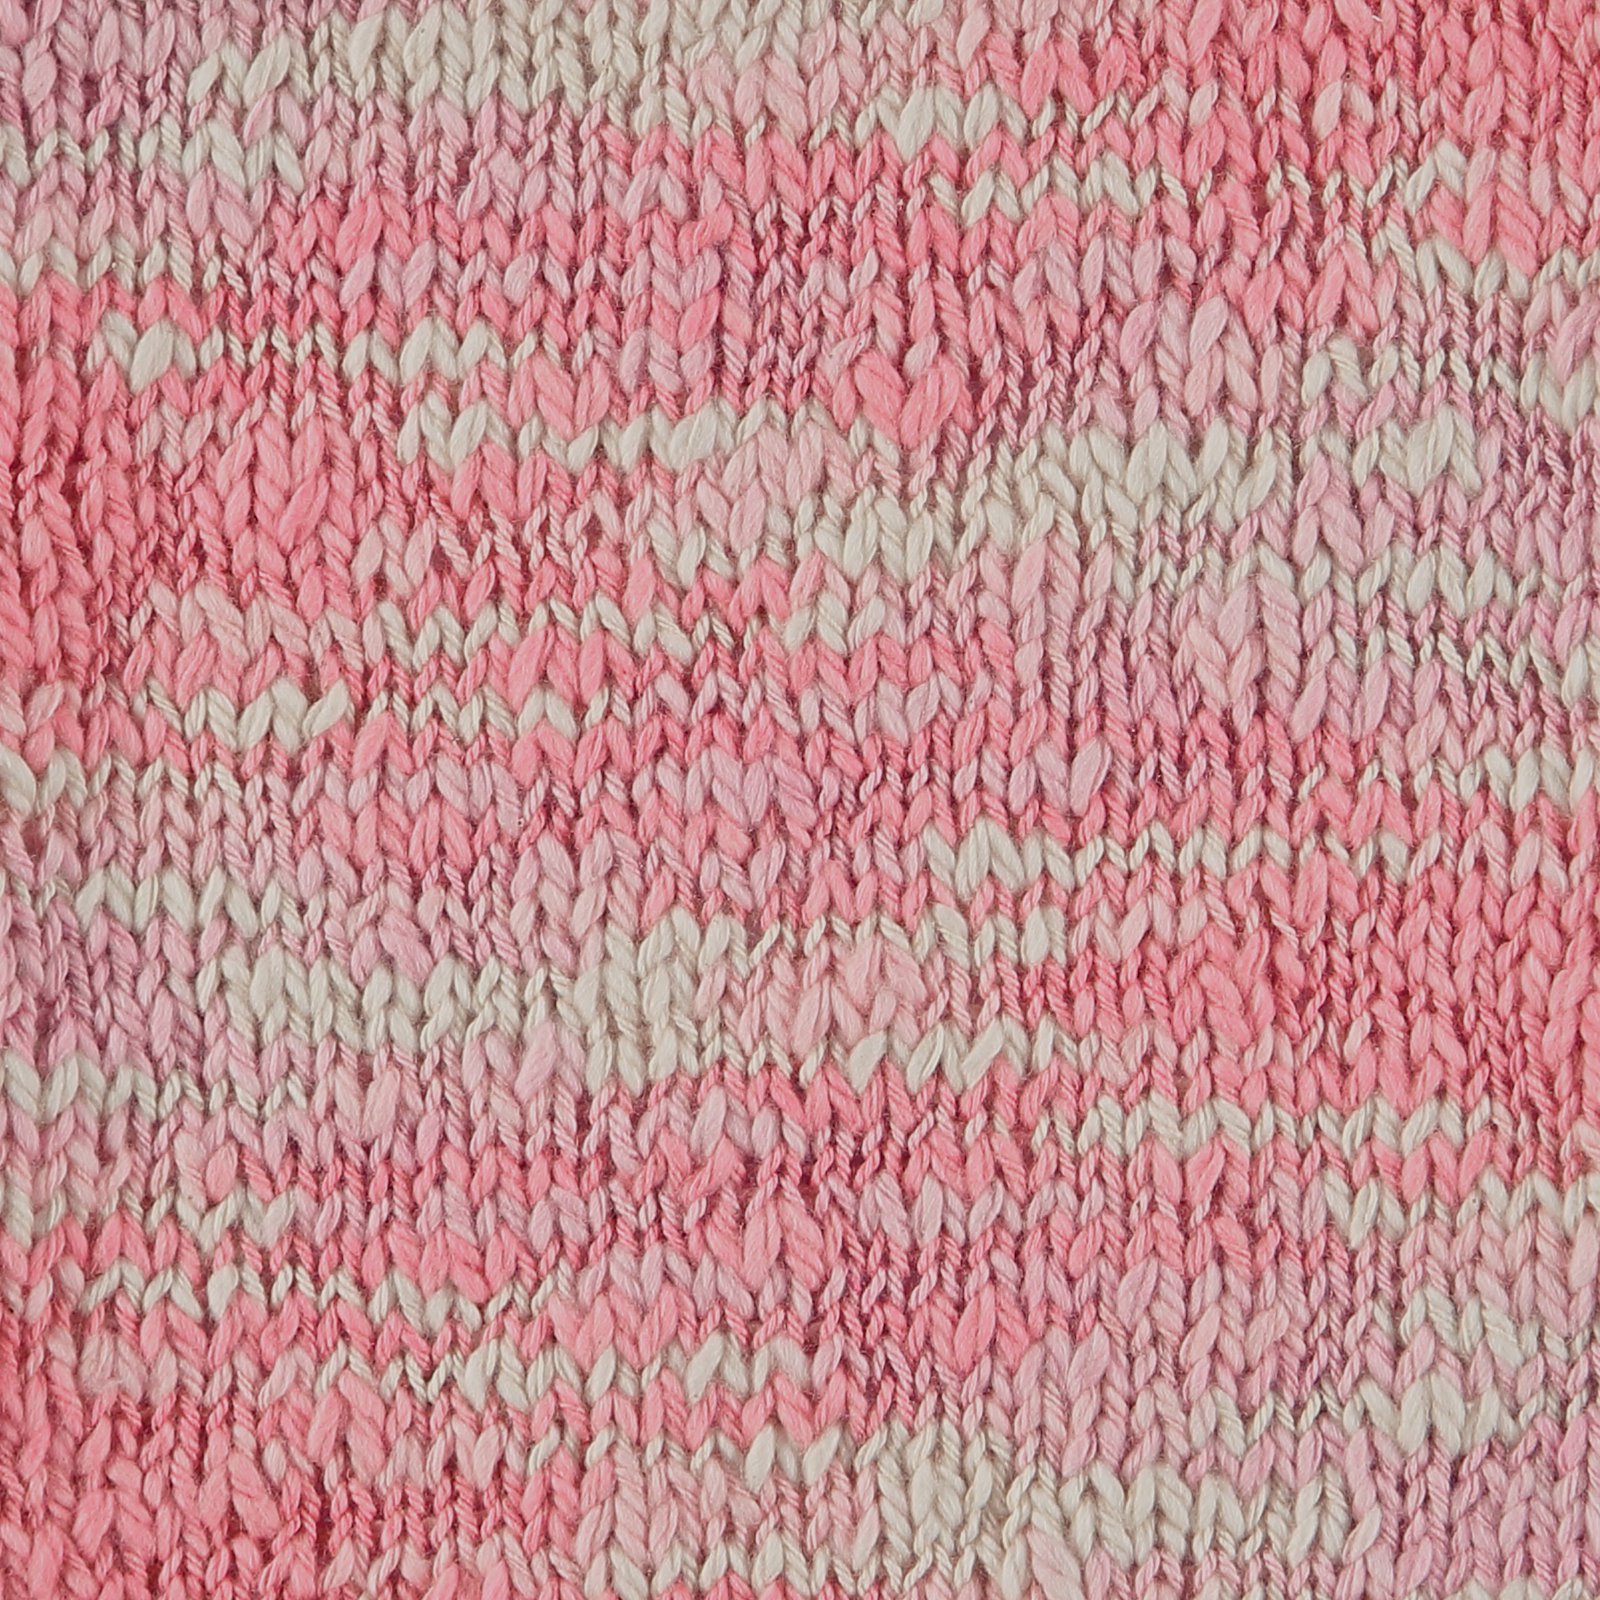 FRAYA, textured cotton yarn "Wavy", pink mix 90000203_sskit